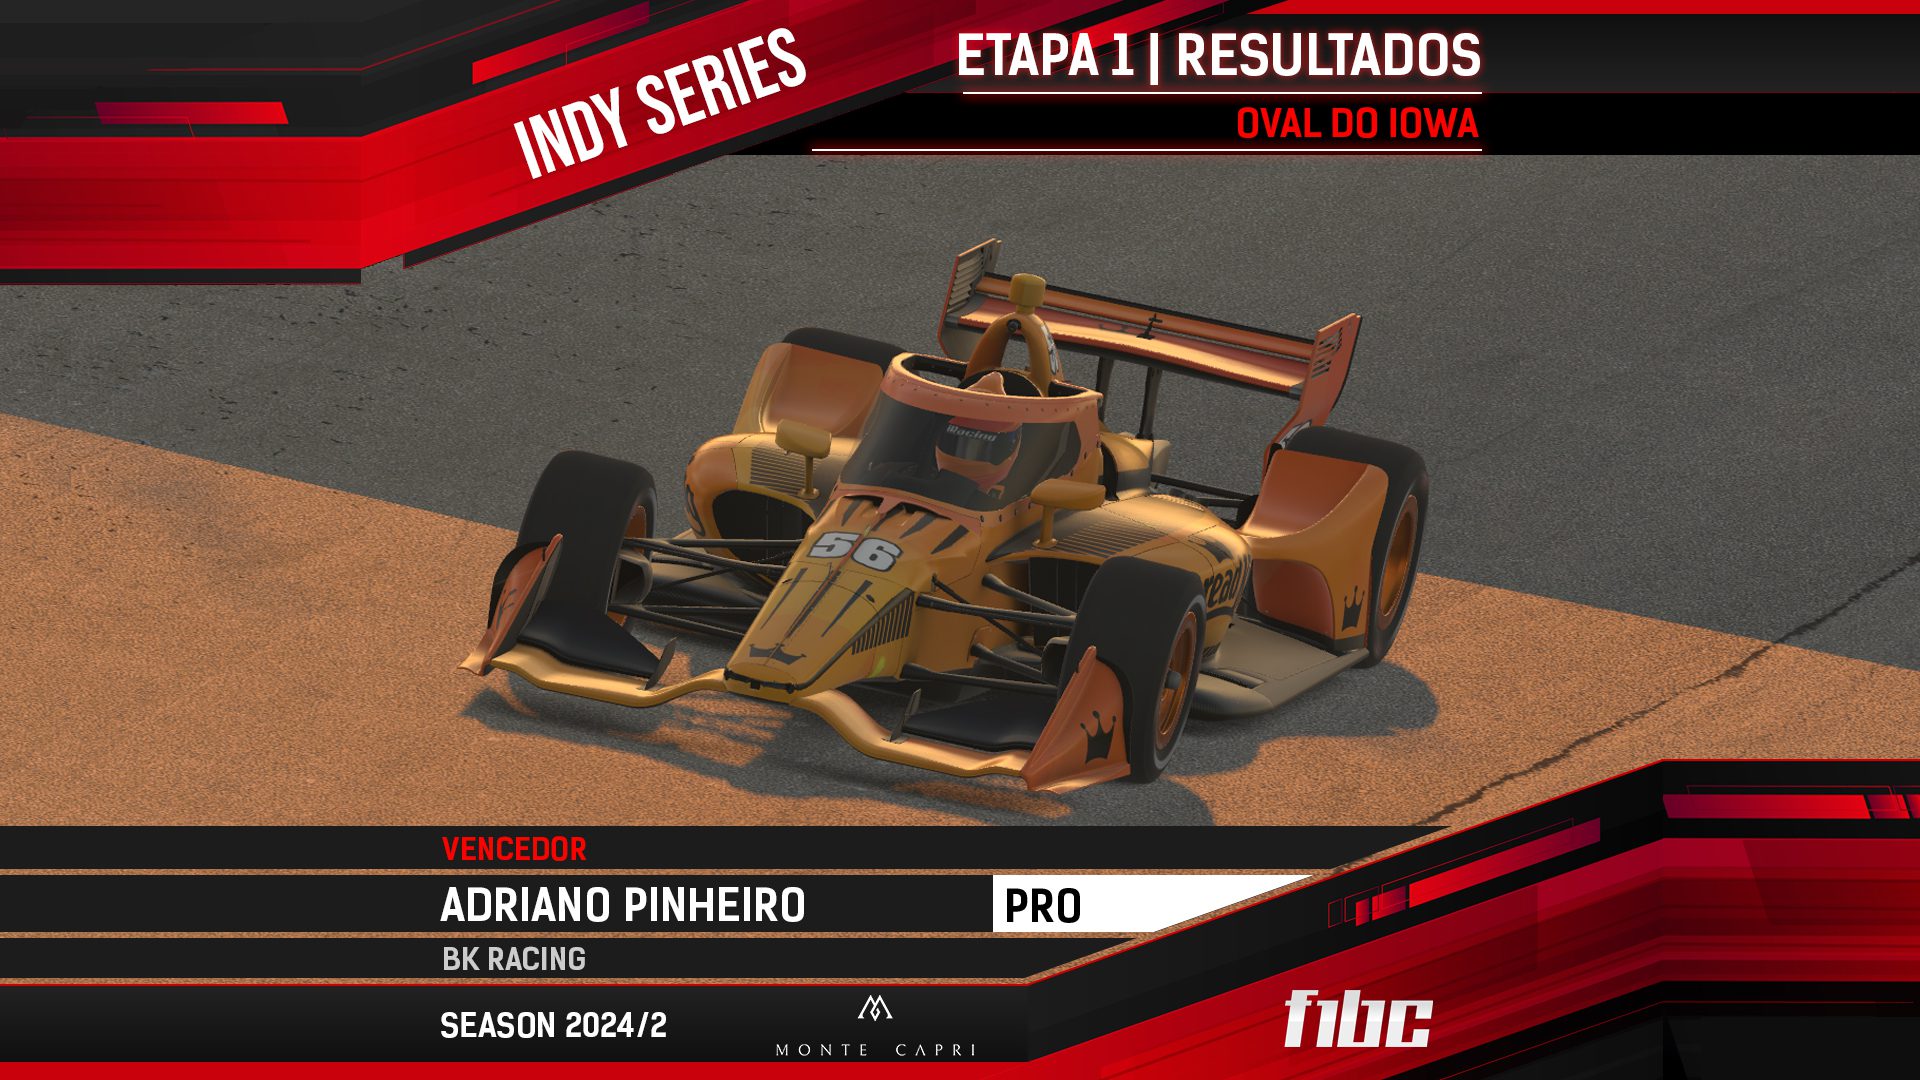 Monte Capri Indy Series: Adriano Pinheiro inicia temporada com vitória em Iowa